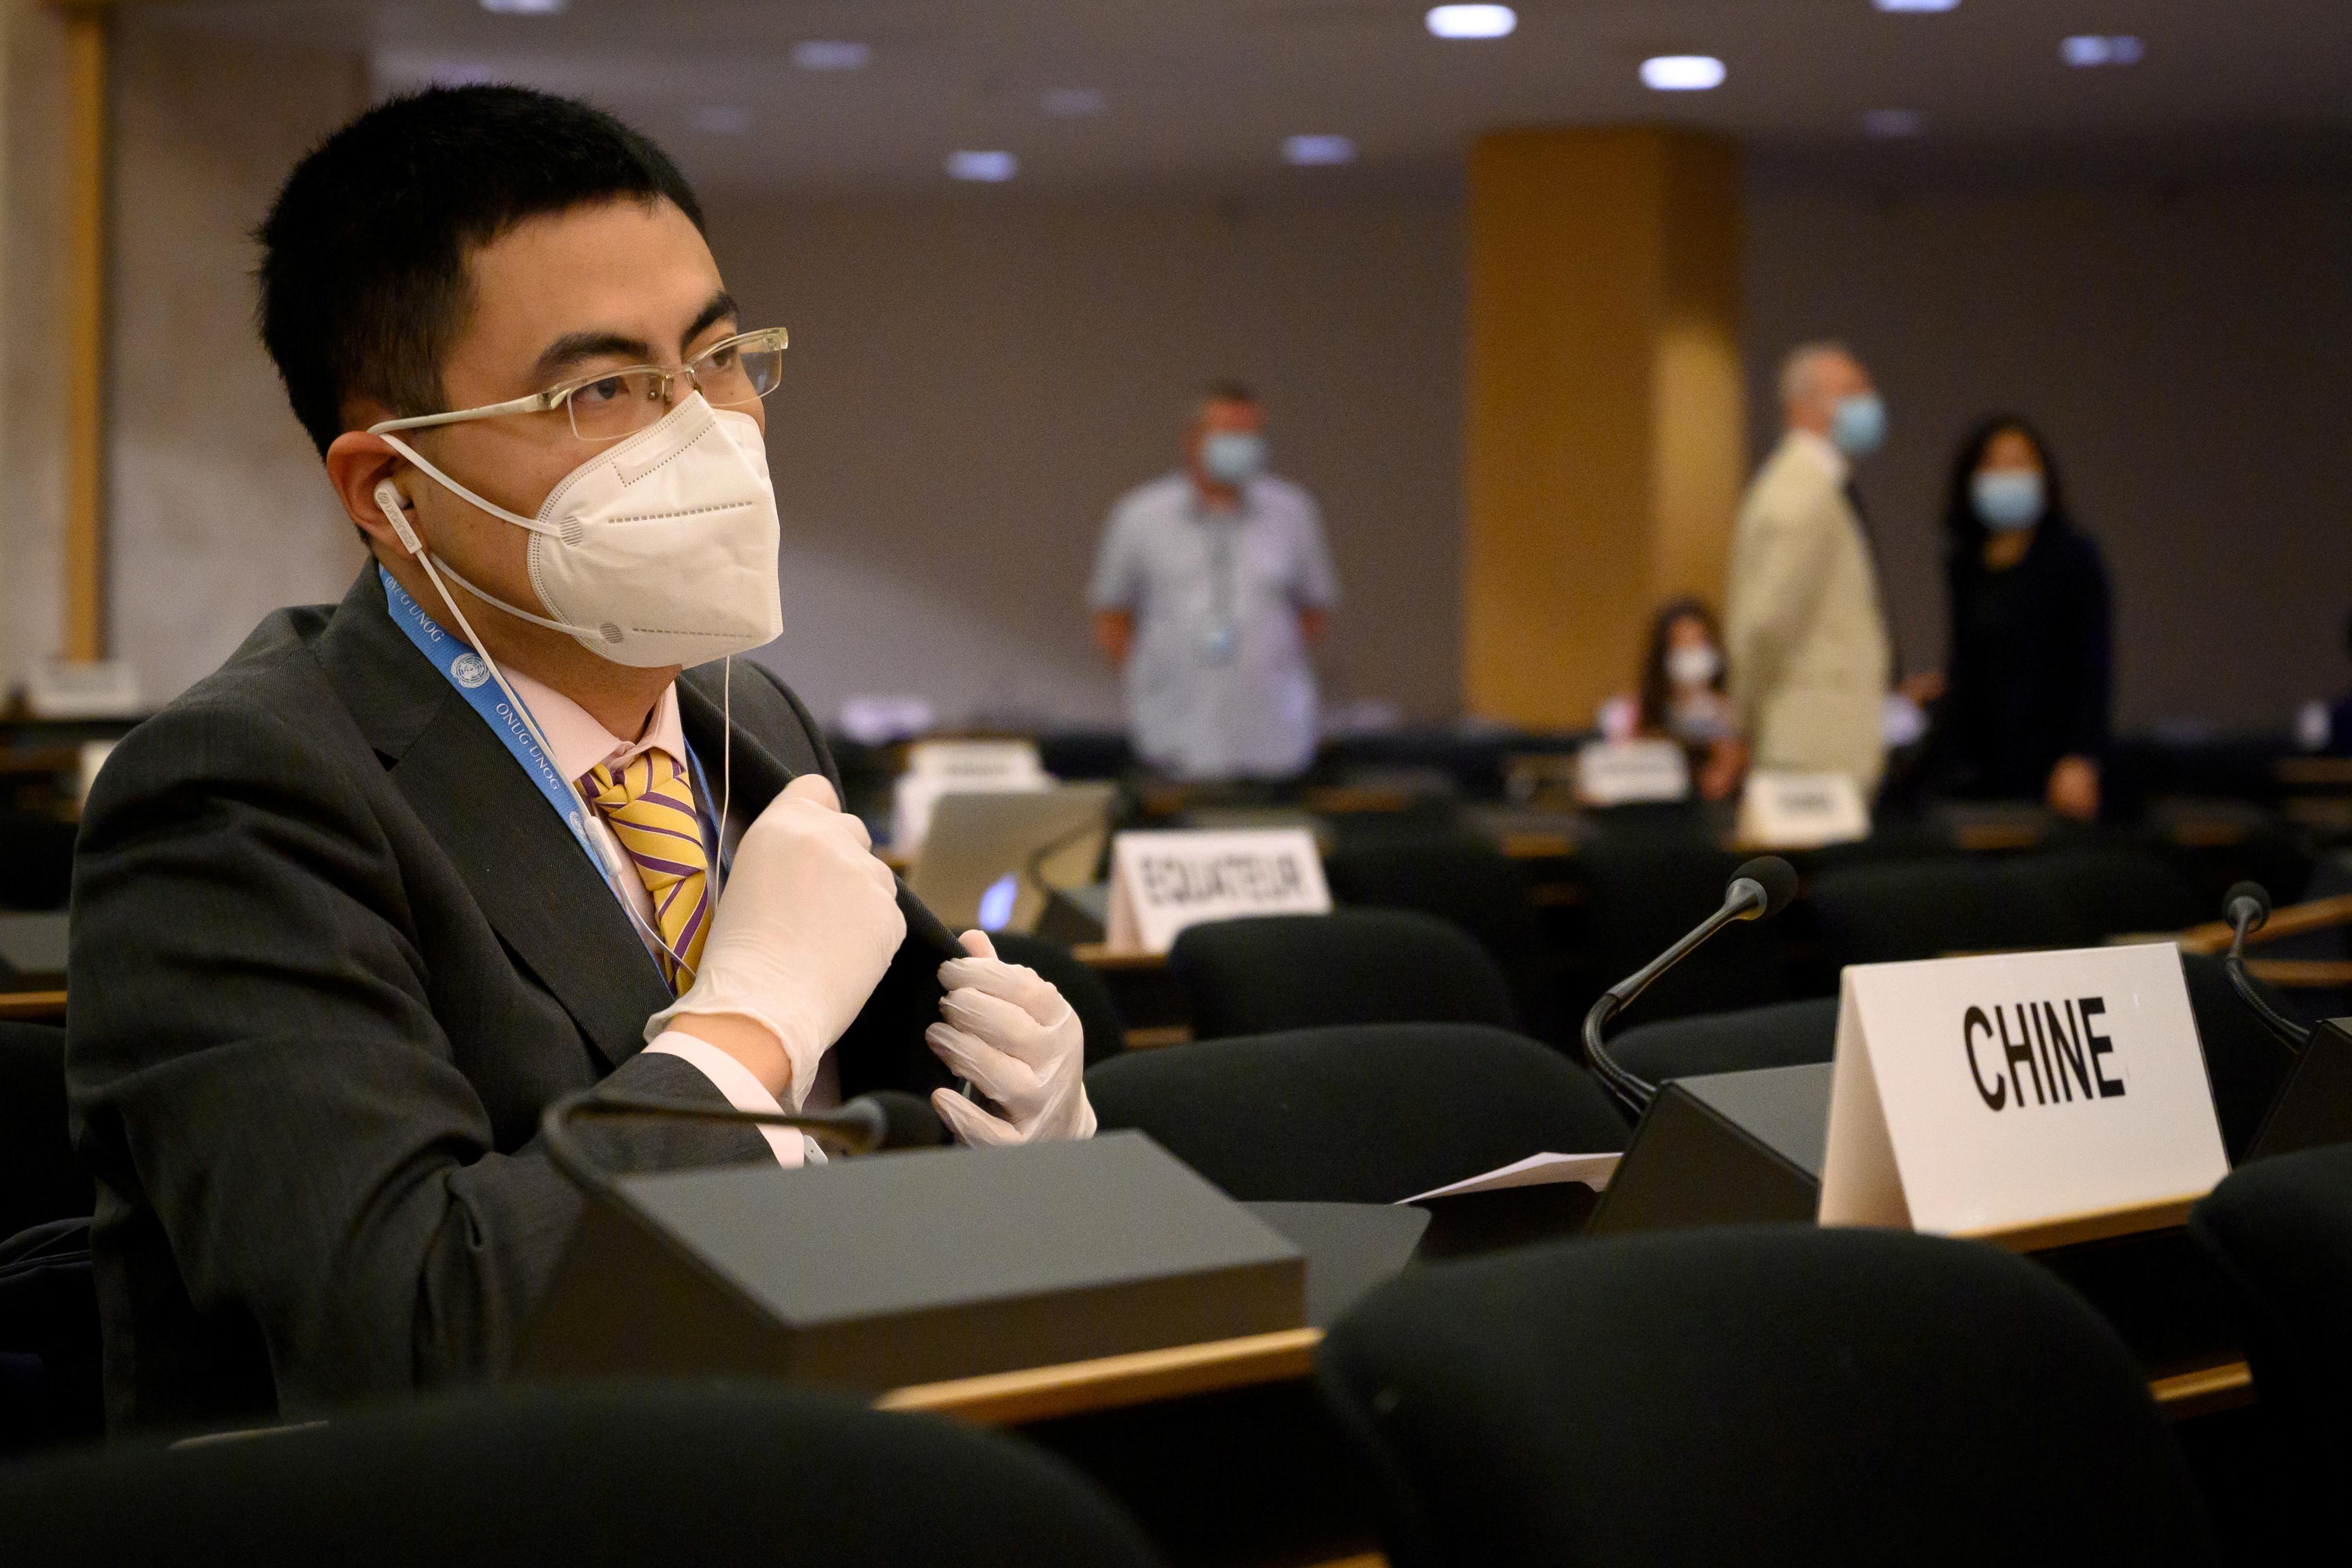 Lors de la dernière session du Conseil des droits de l'homme à Genève, la Chine a obtenu de nombreux soutiens pour faire barrage aux pays occidentaux. [Reuters - Fabrice Coffrini]